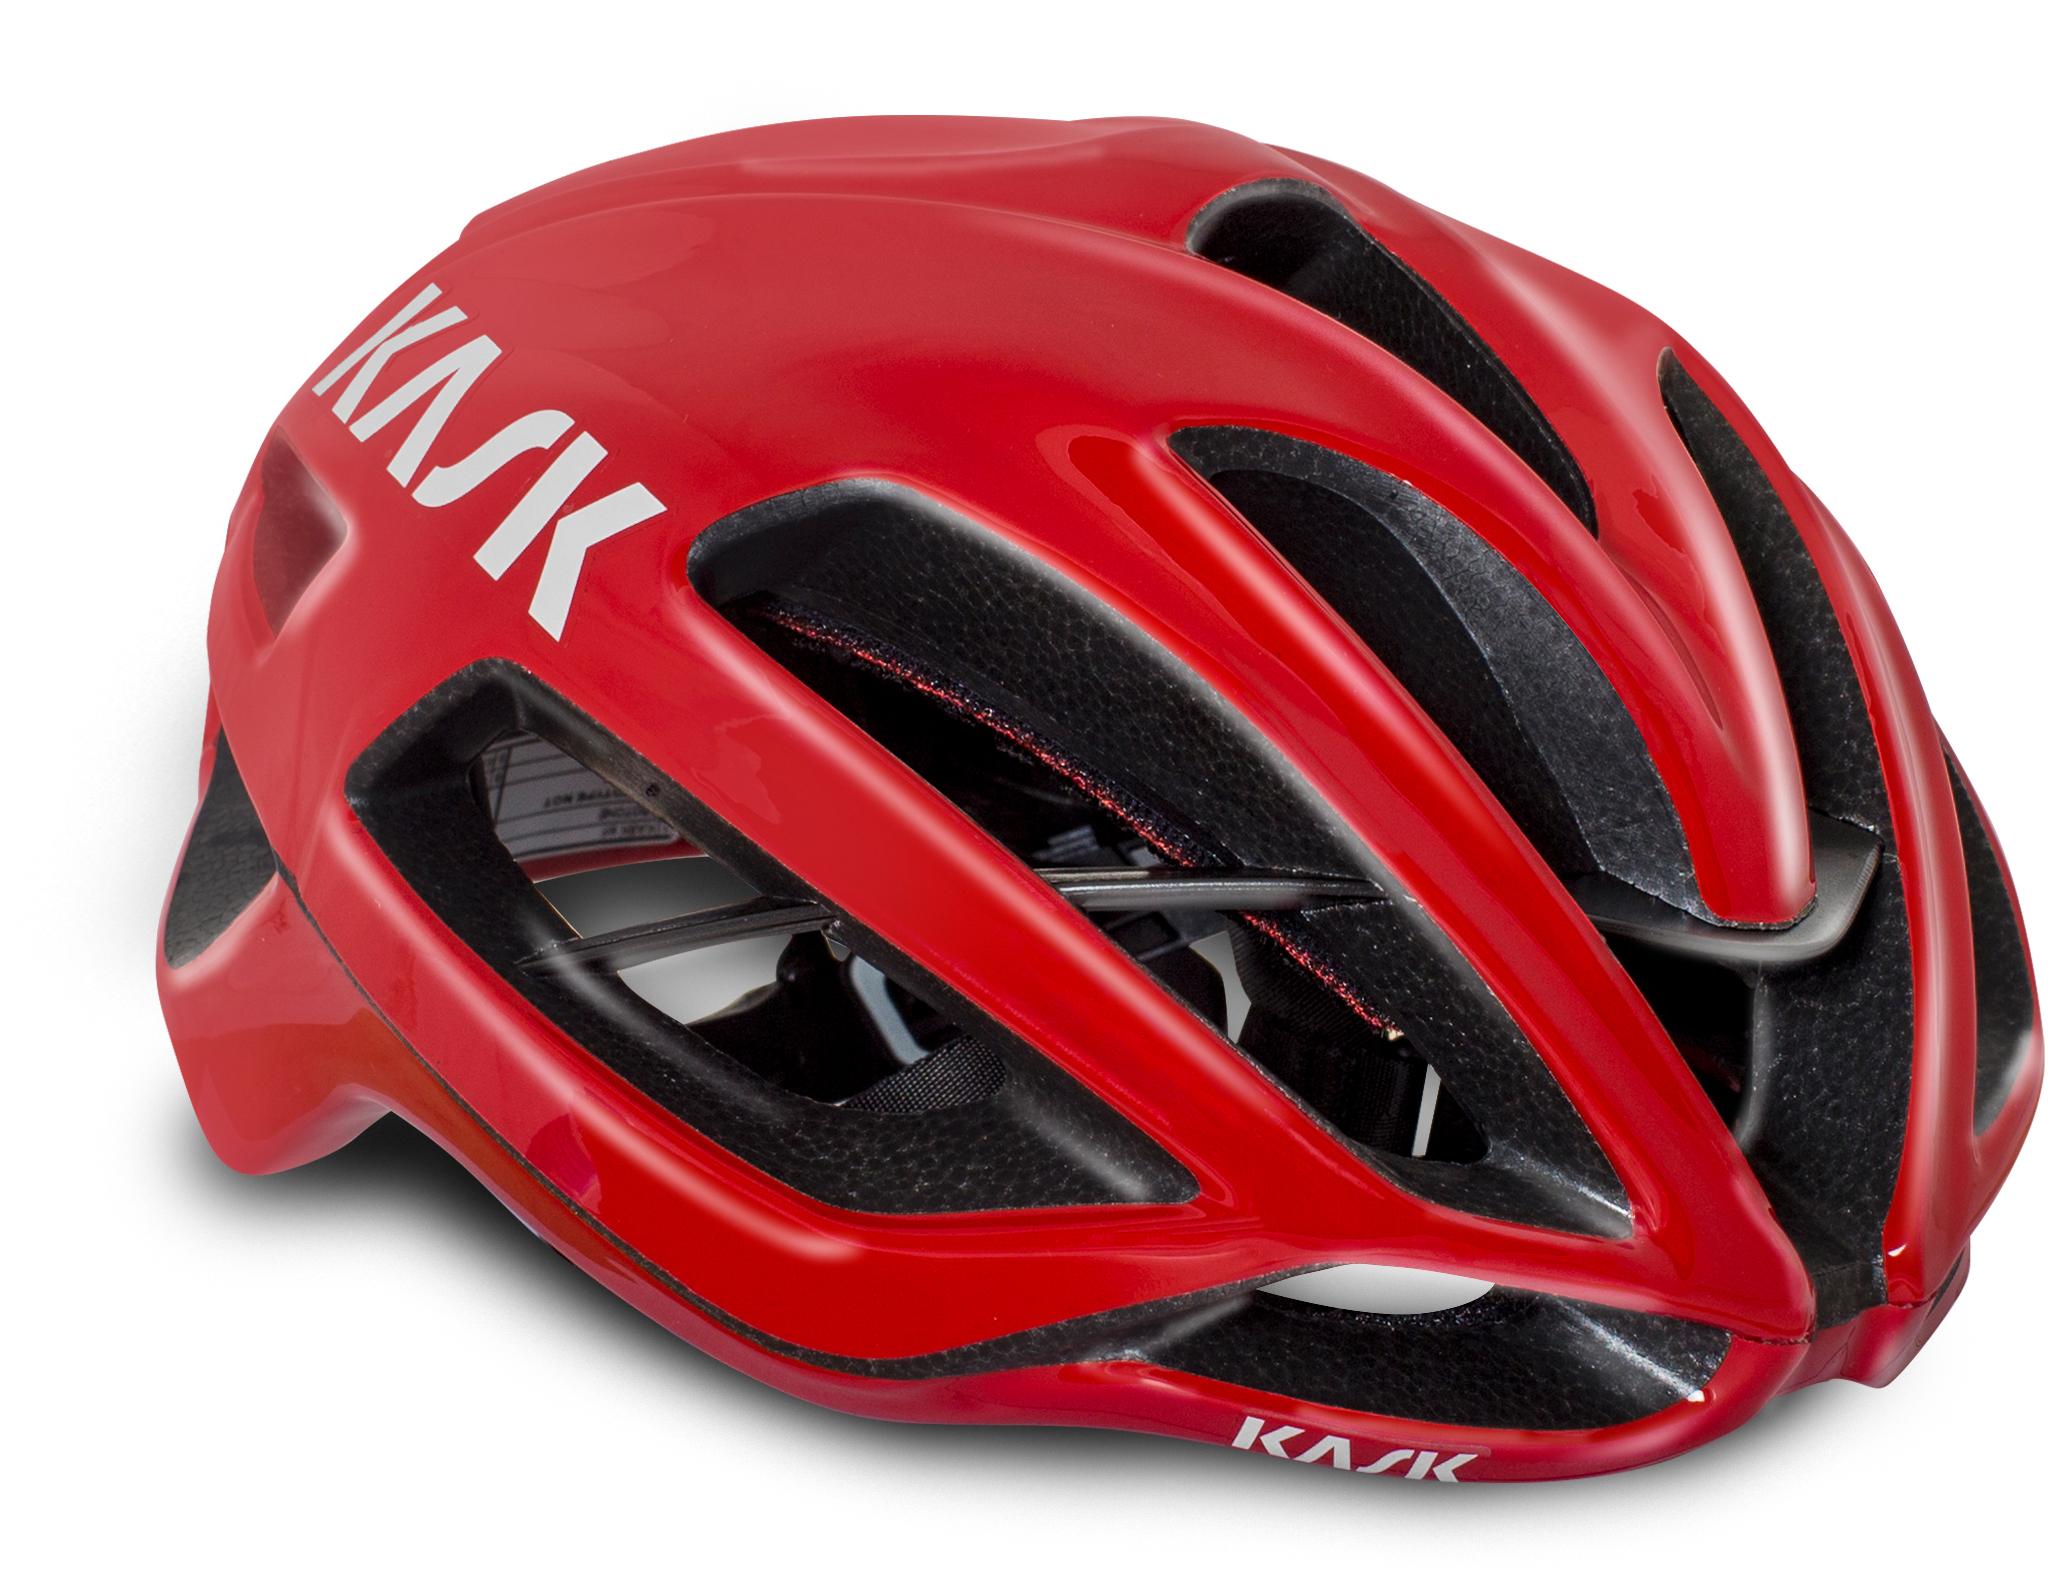 Kask Protone Wg11 Road Helmet, Red, Large